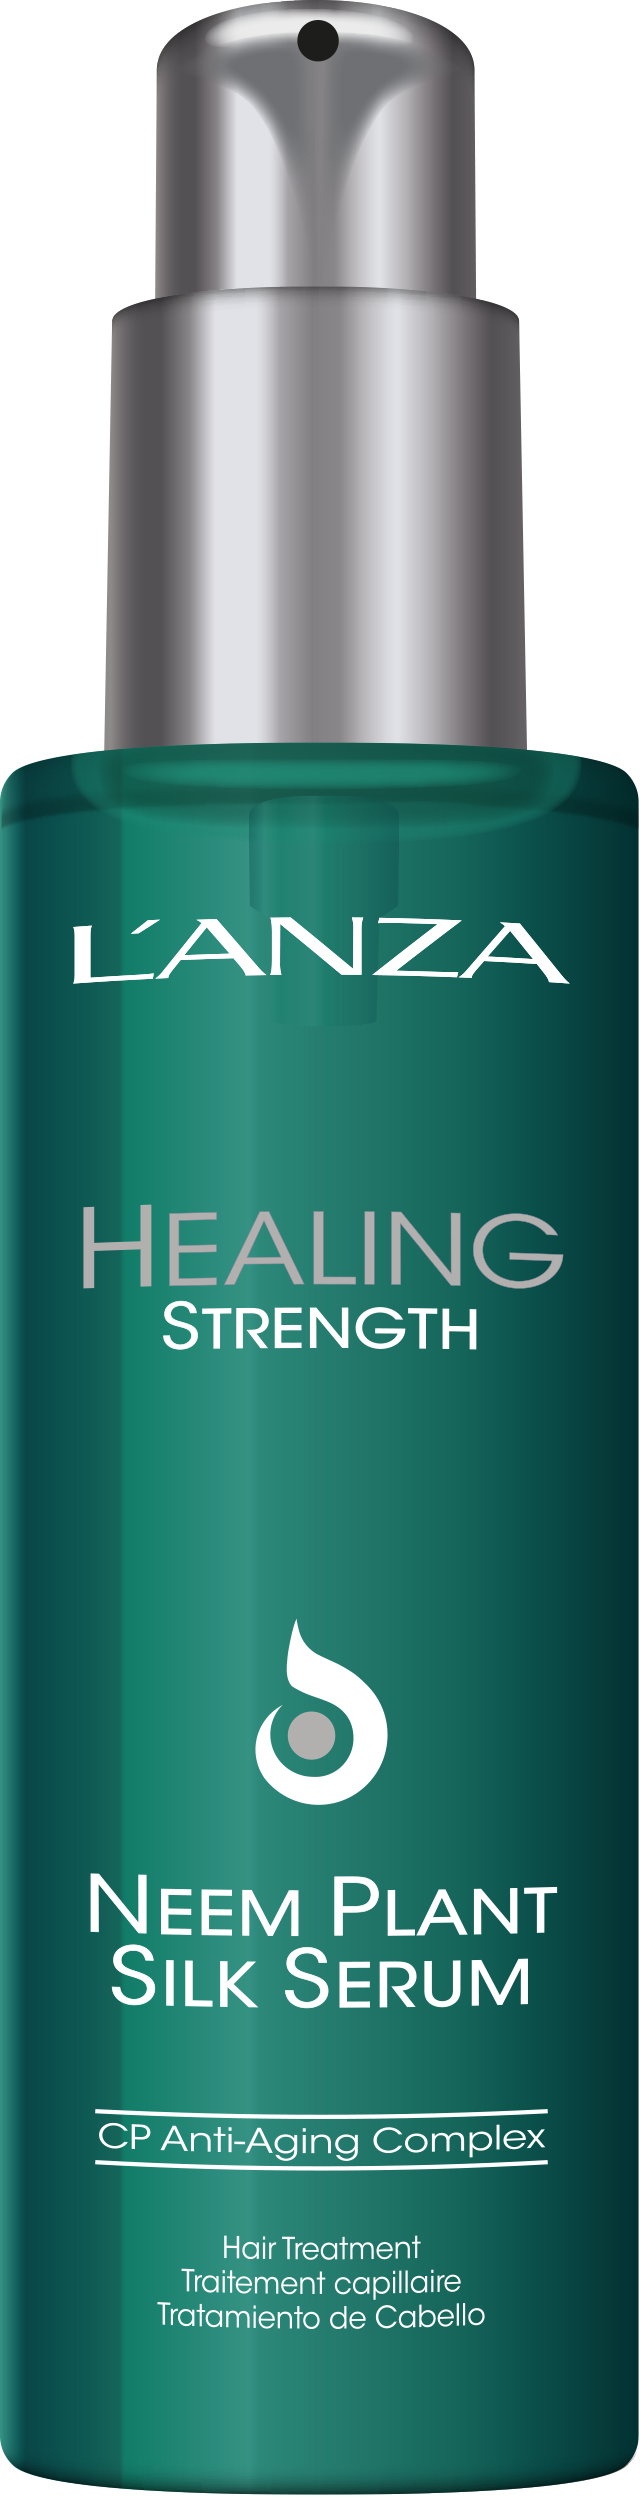 L'ANZA Healing Strenght Serum